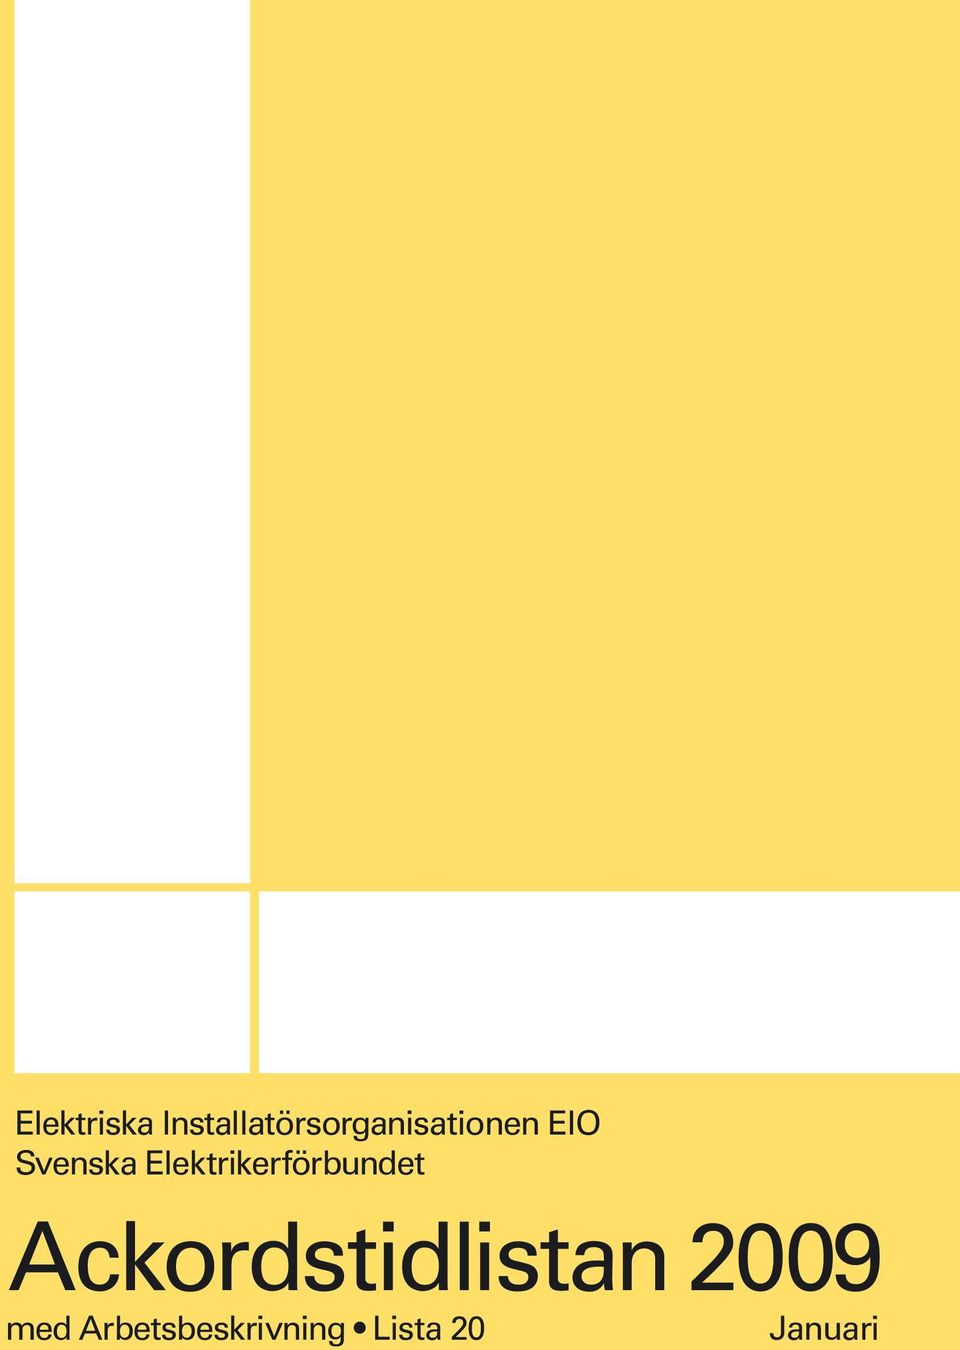 Svenska Elektrikerförbundet